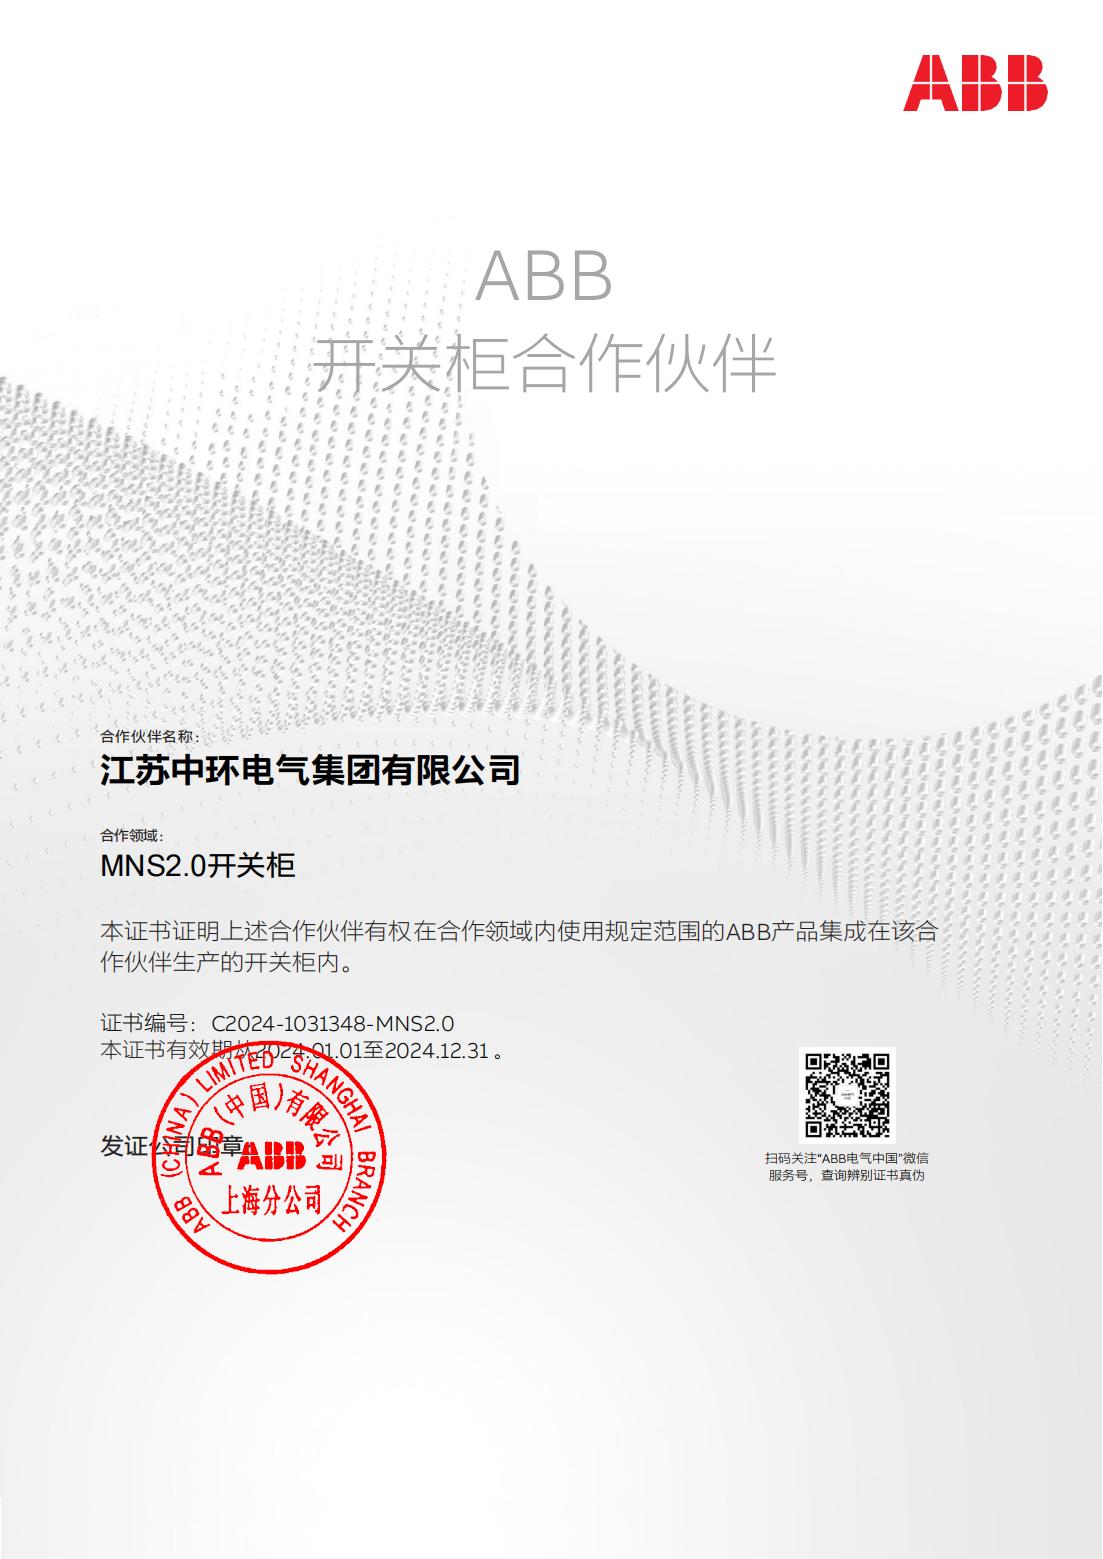 合作伙伴 ABB(MNS2.0) 